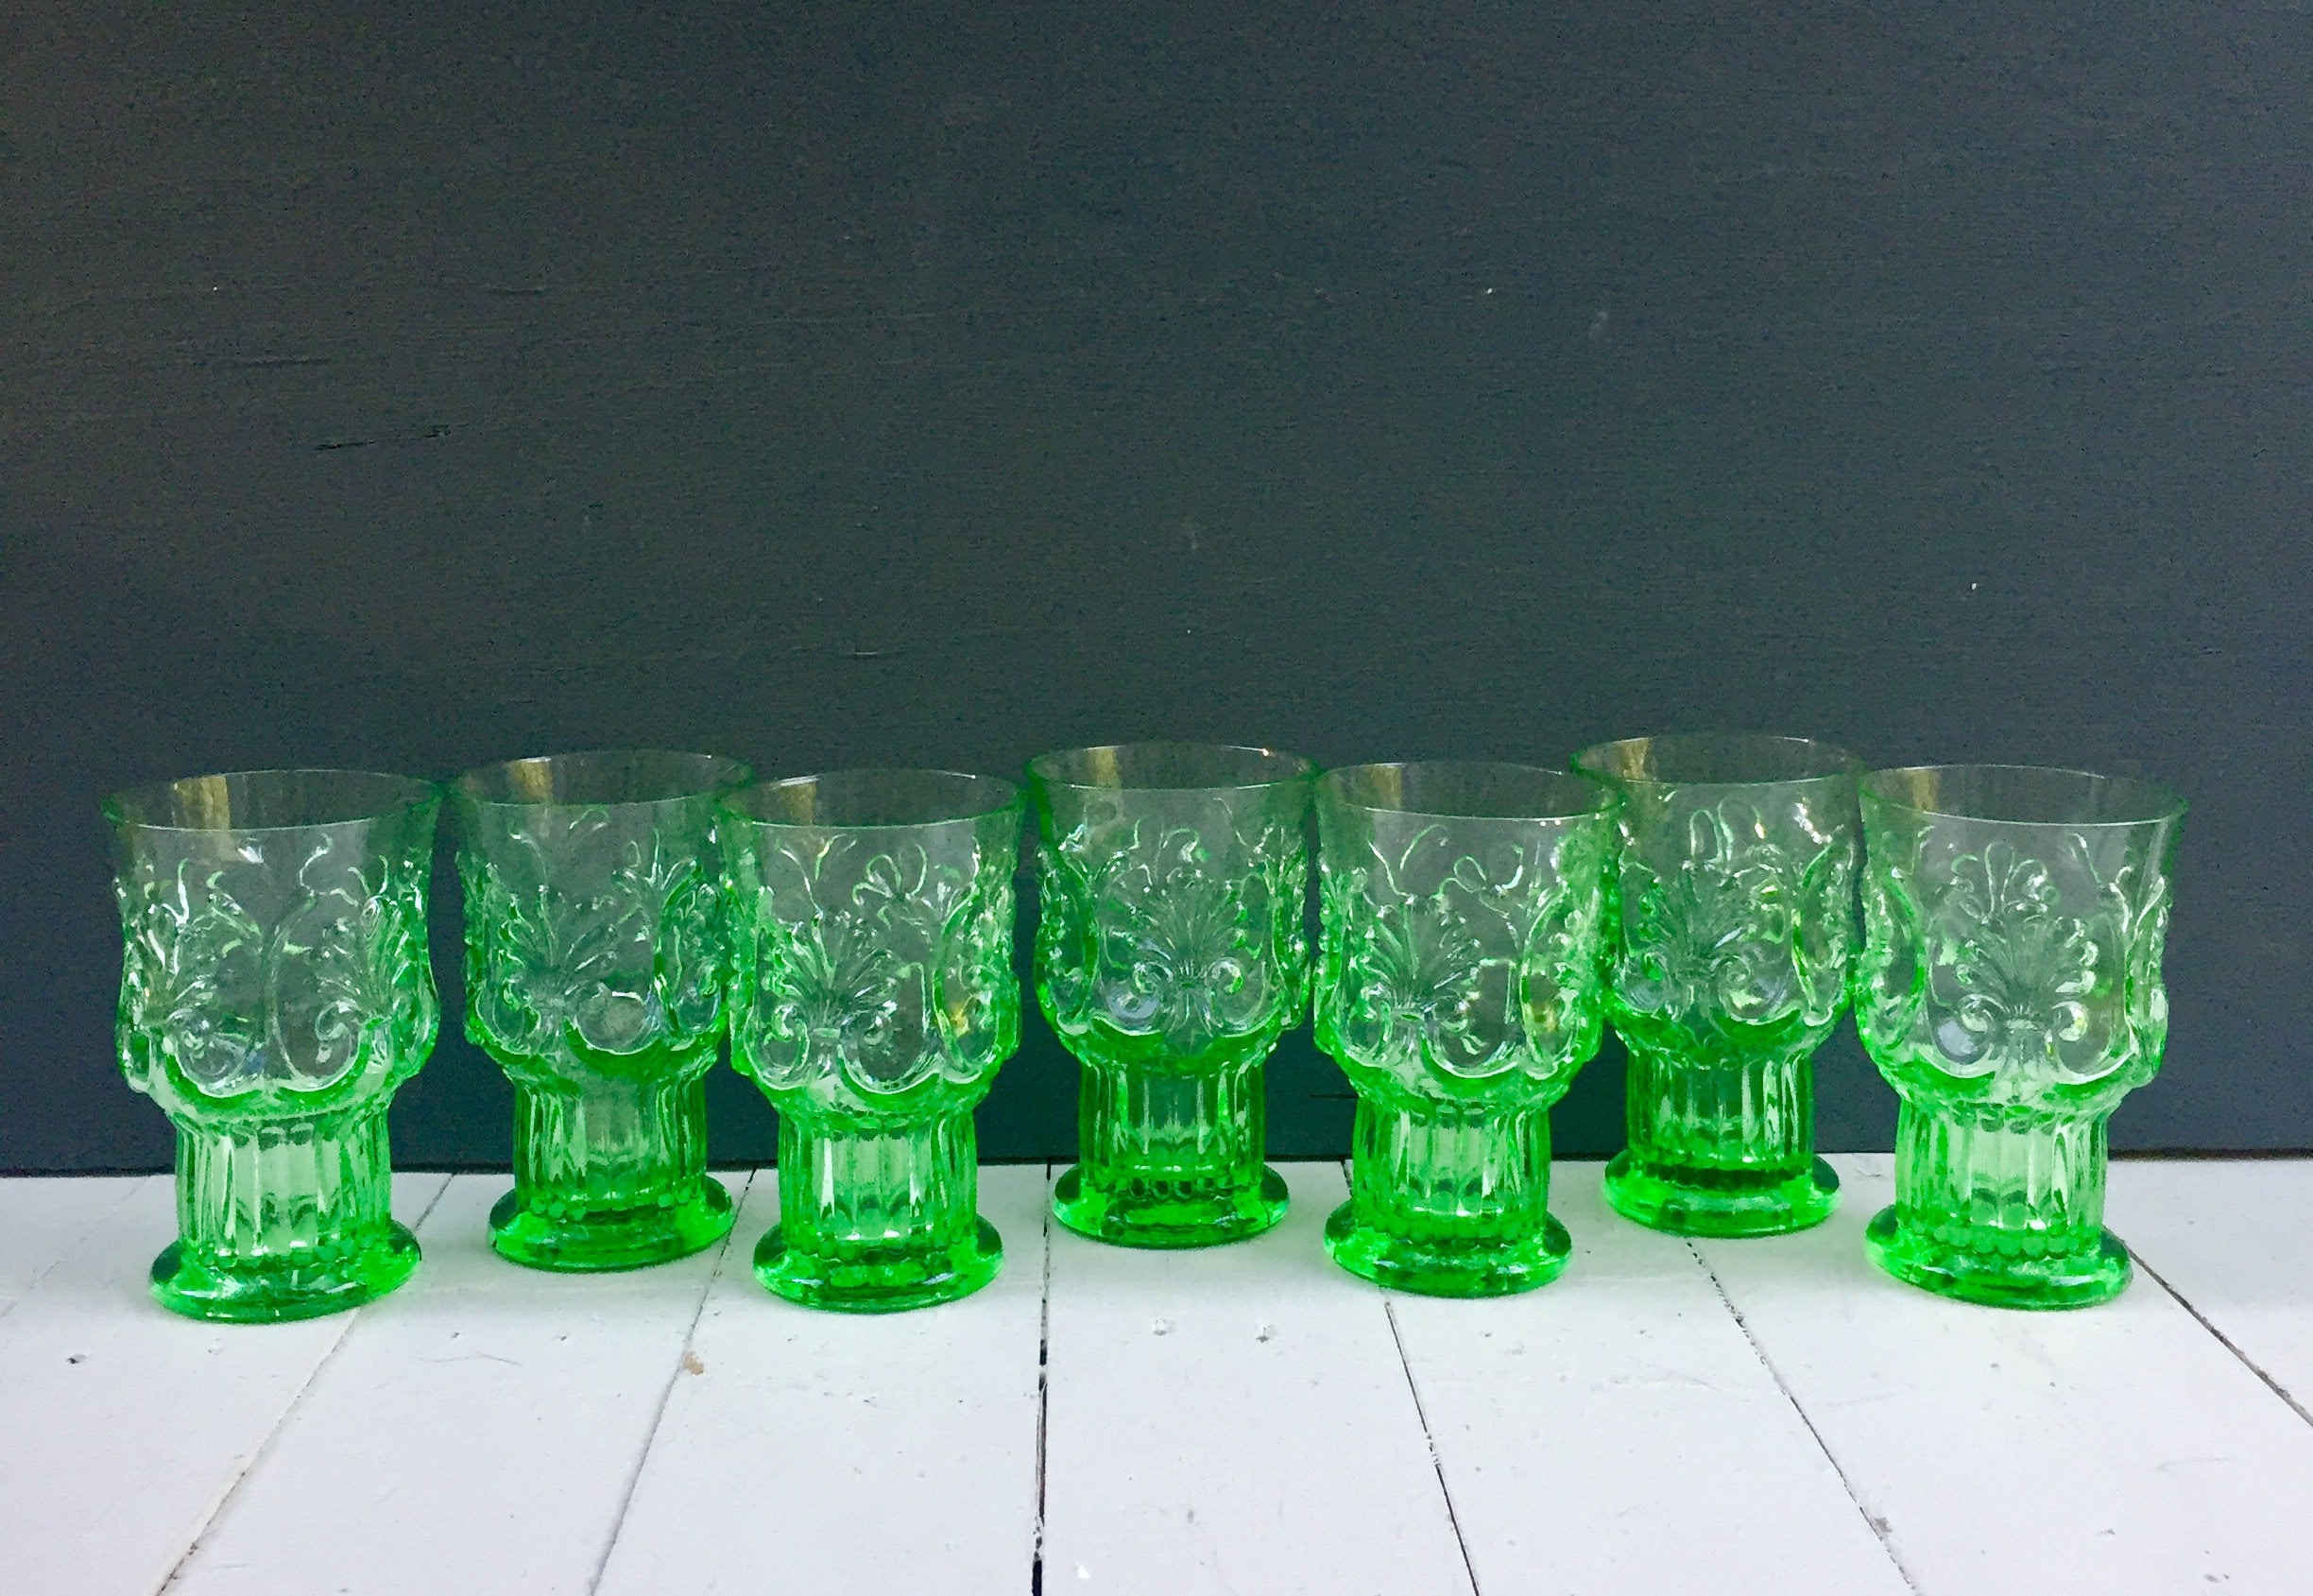 Vintage Drinking Glasses Vintage Green Drinking Glasses Pedestal Drinking Glasses Art Deco